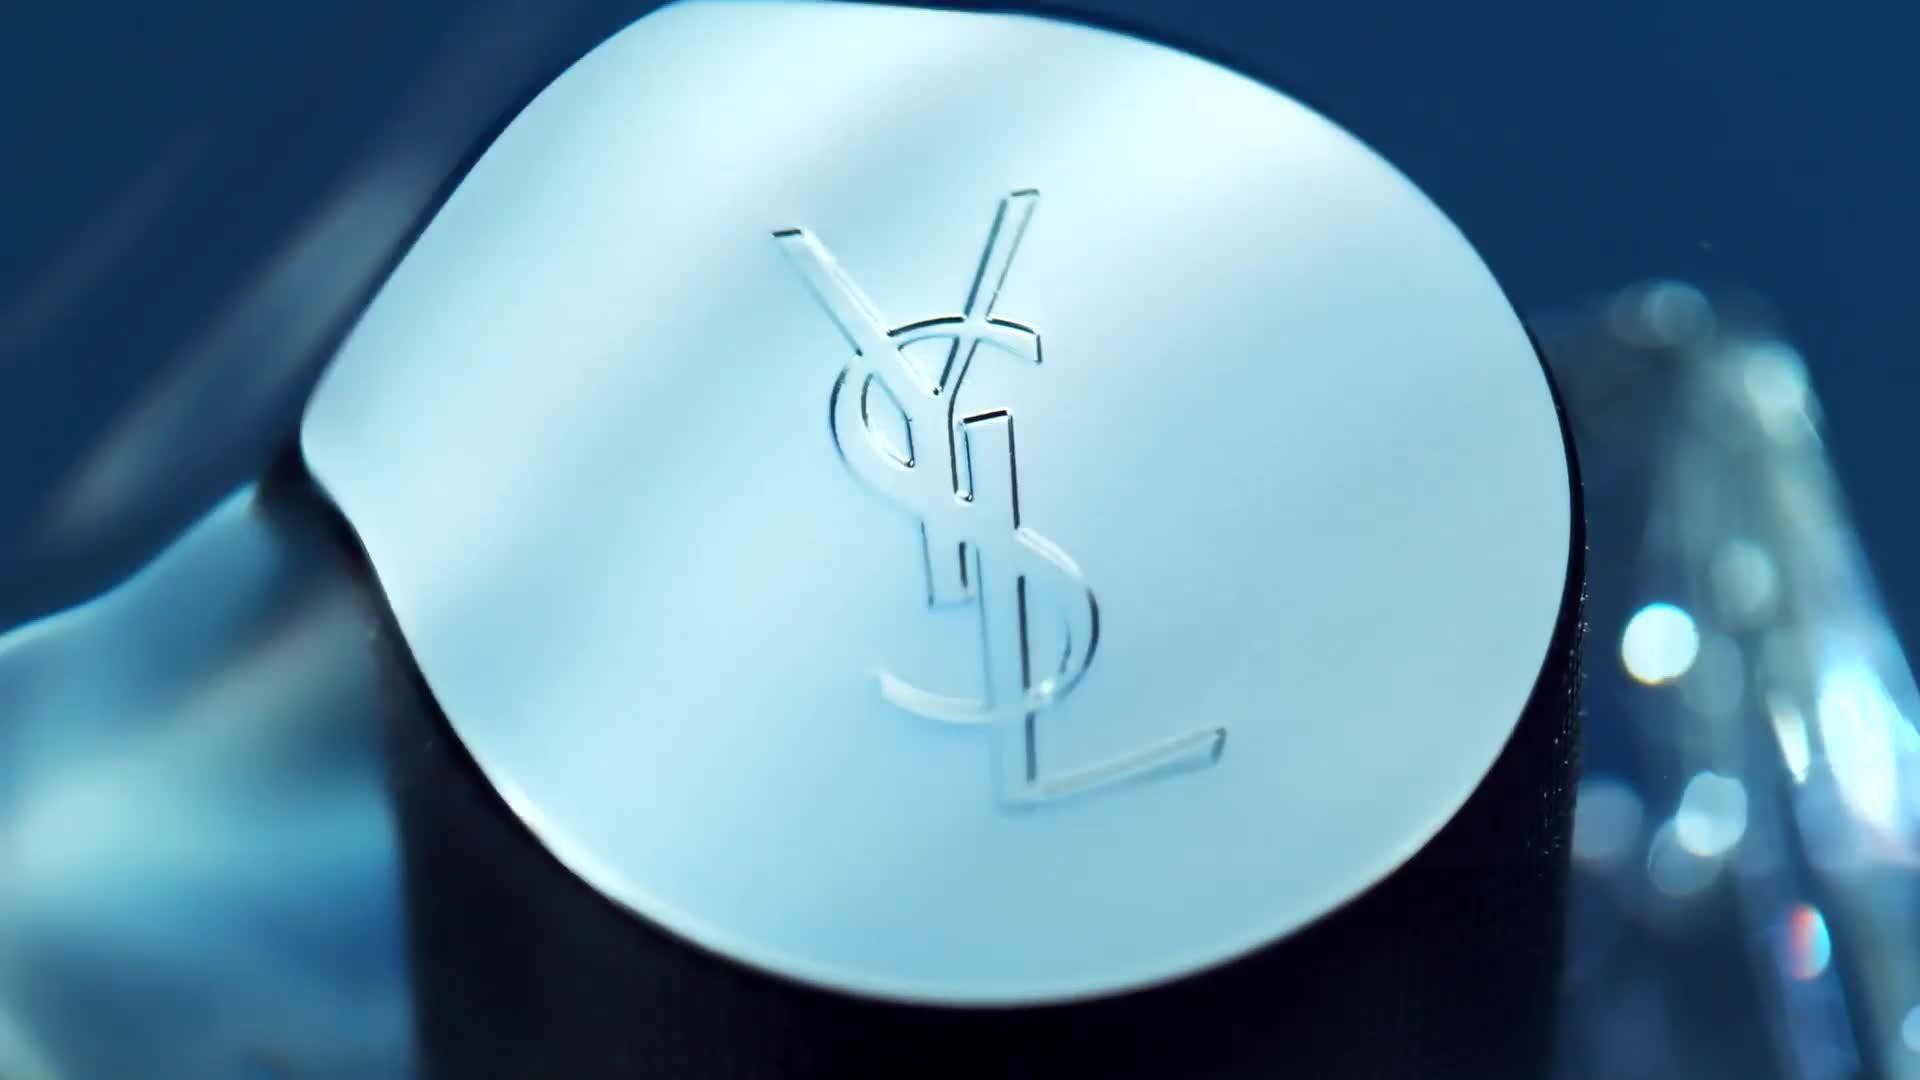 Yves Saint Laurent (YSL): Brand Evolution - Brandwick®